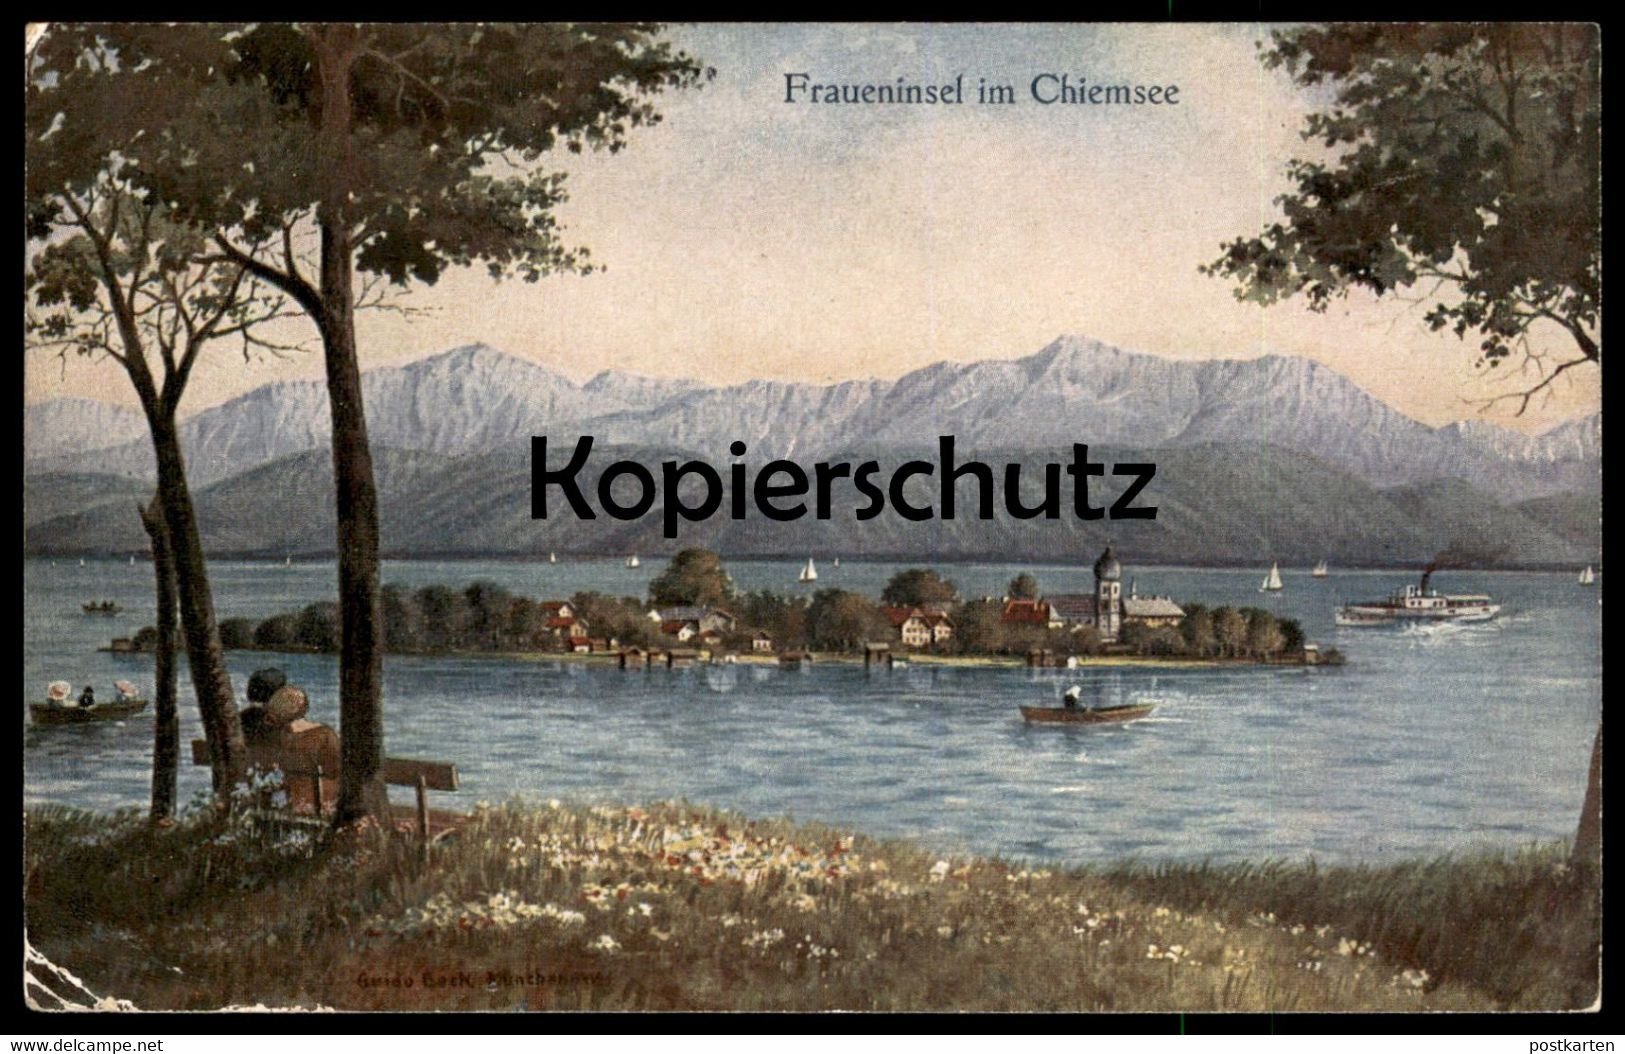 ALTE KÜNSTLER POSTKARTE FRAUENINSEL IM CHIEMSEE SIGN. GUIDO BECK MALER MÜNCHEN AK Ansichtskarte Postcard Cpa - Chiemgauer Alpen